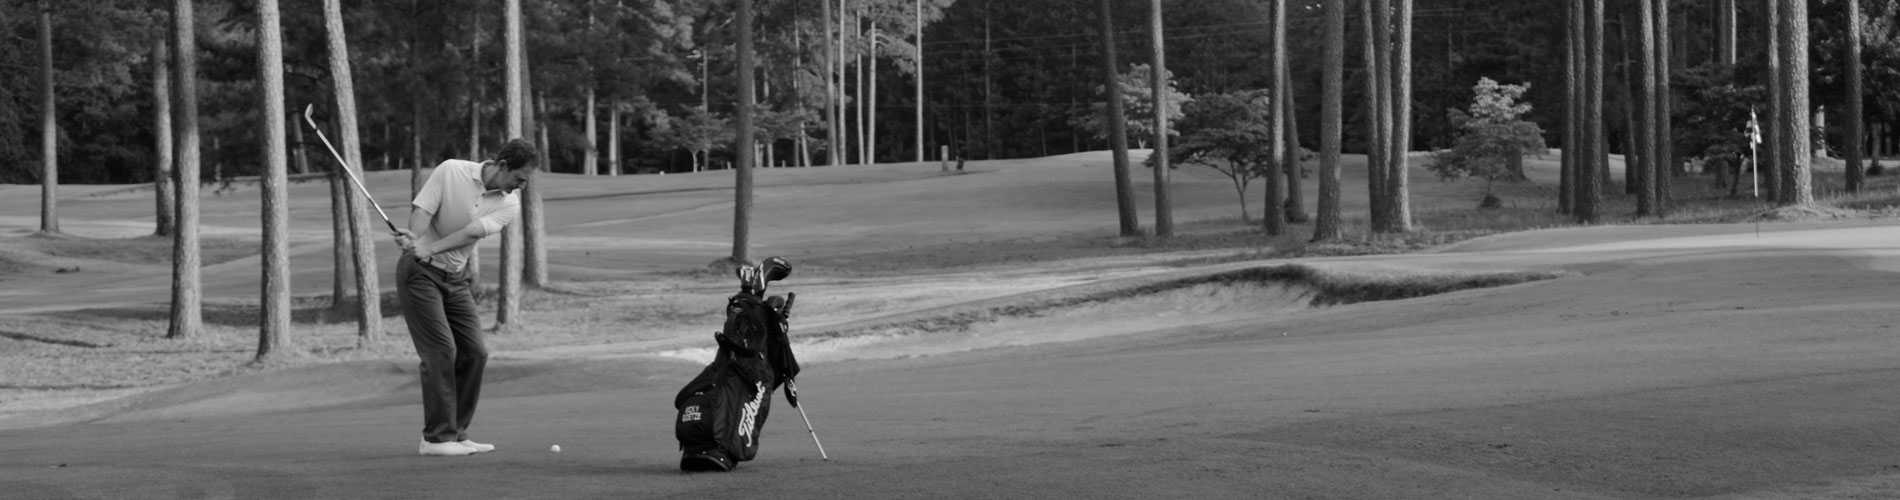 Nicky Goetz Hitting a Golf Shot